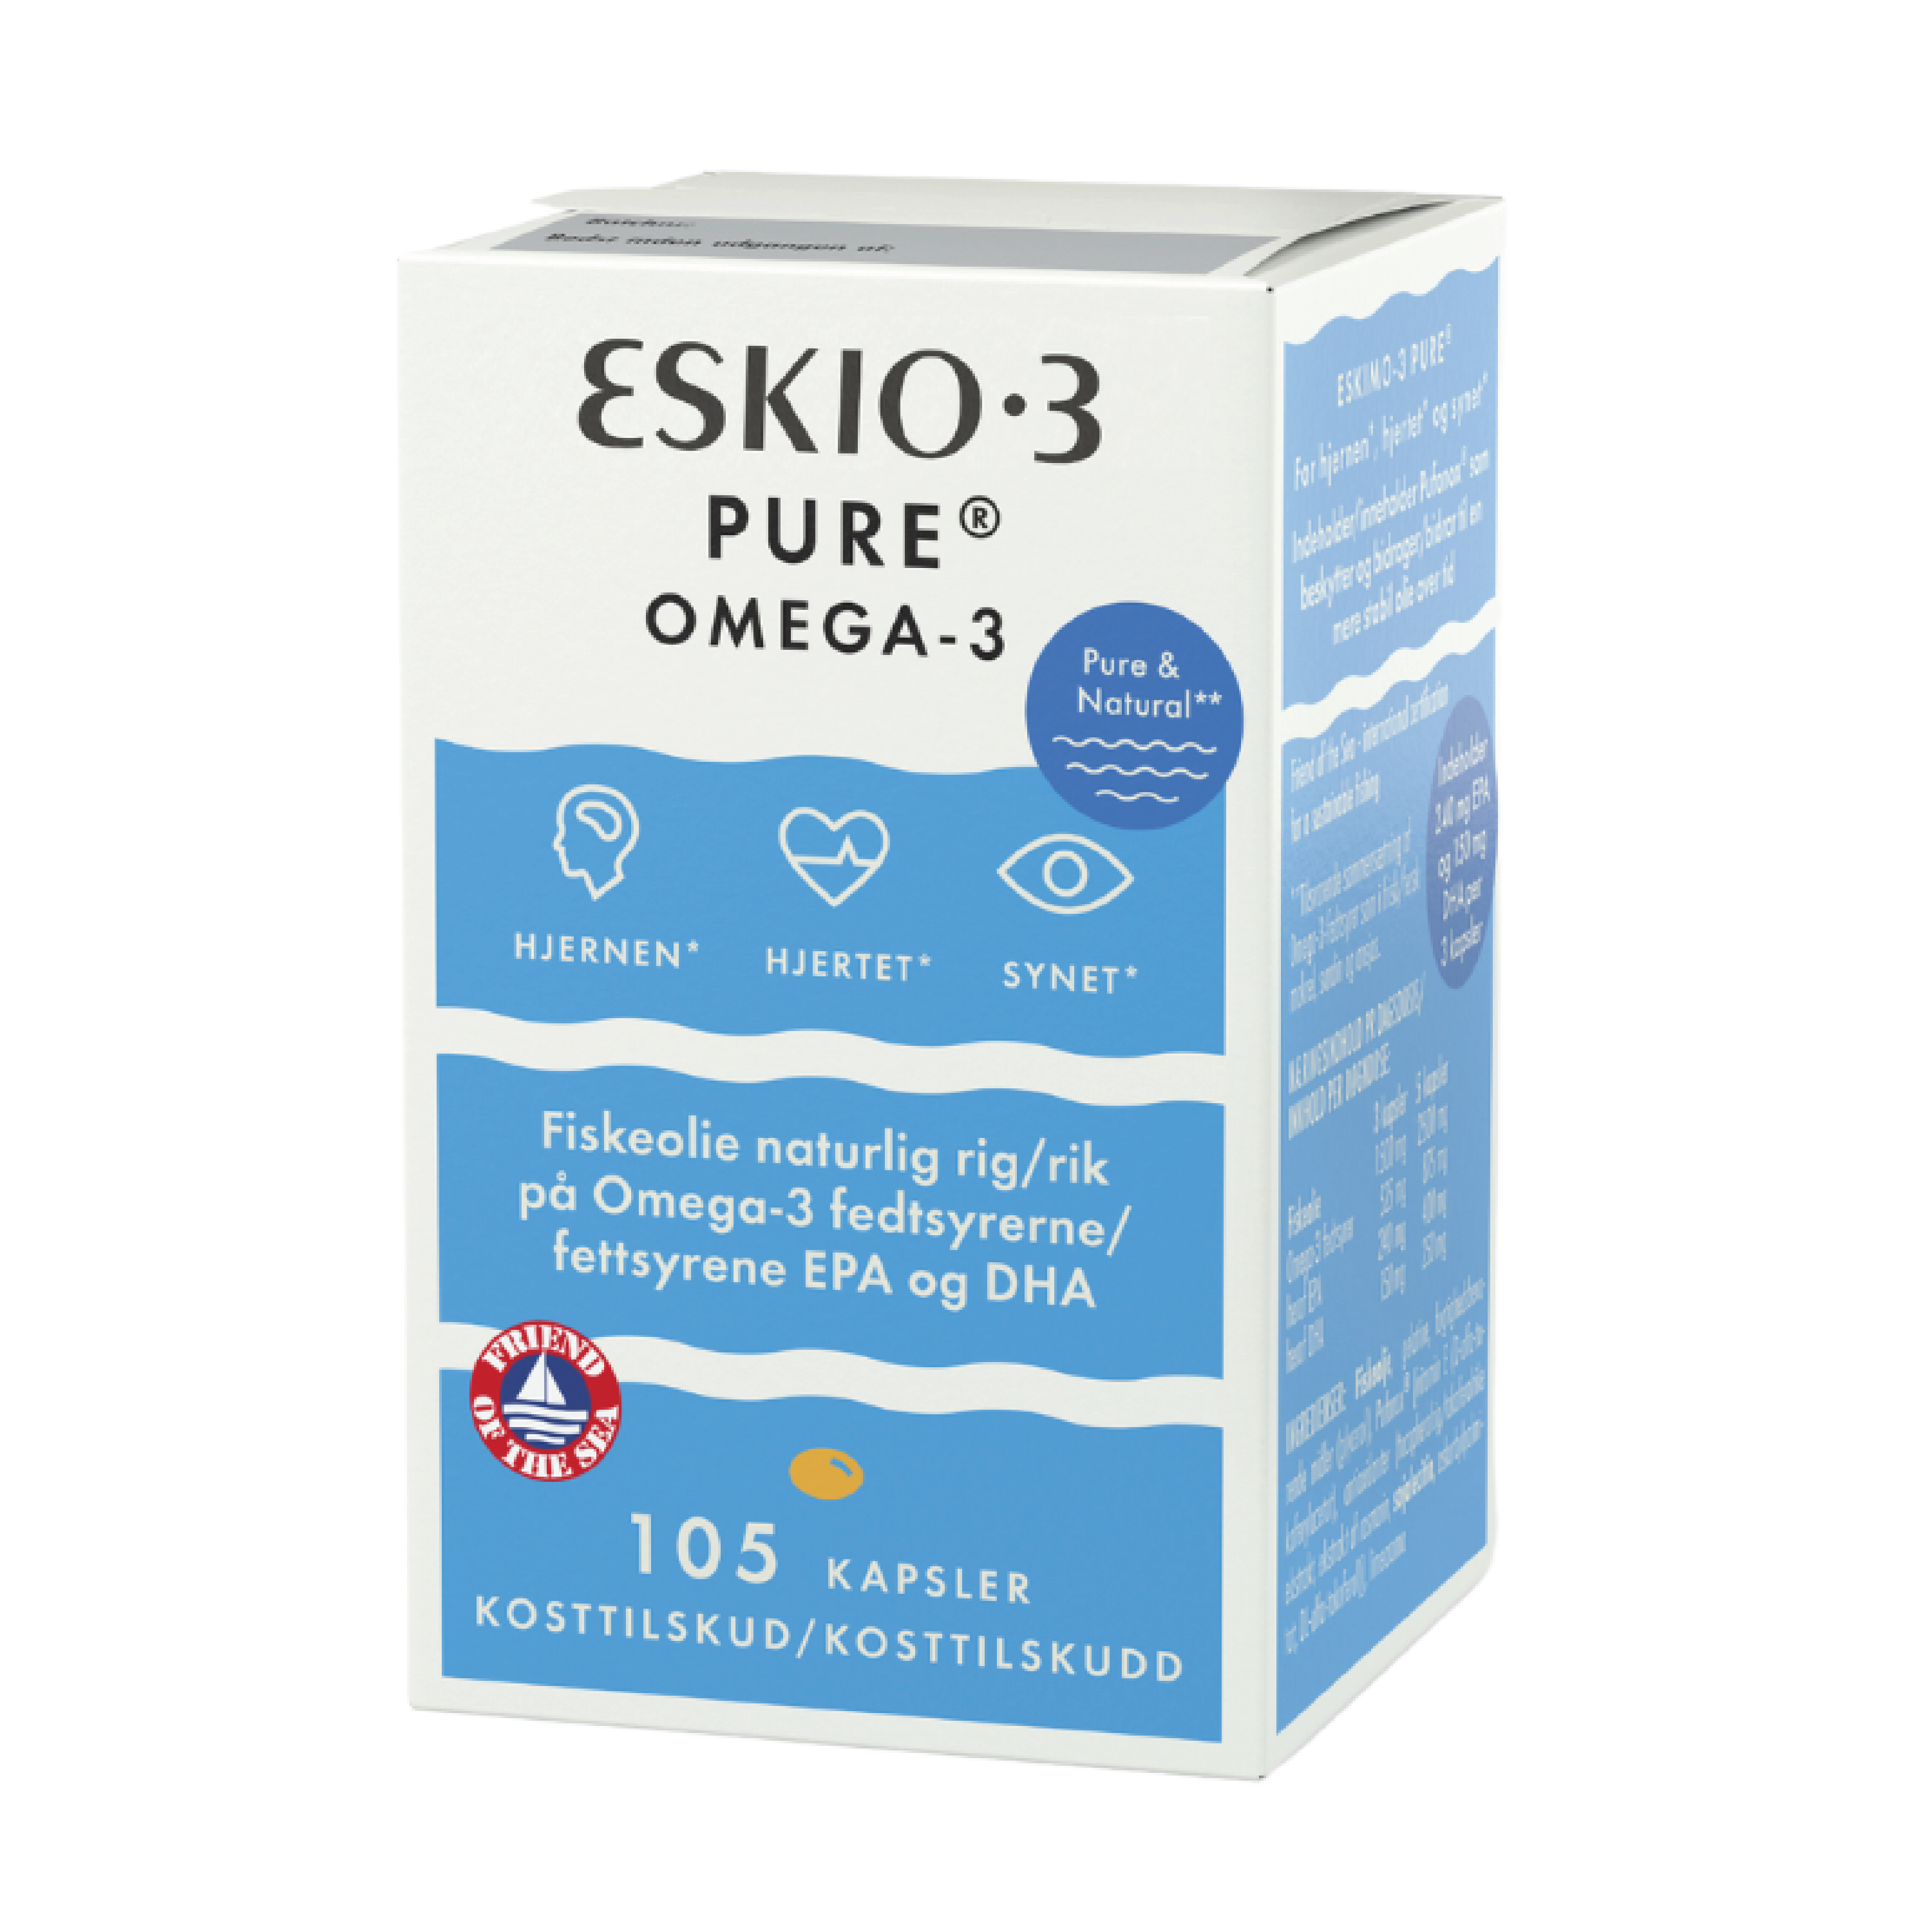 Eskio-3 Pure Omega-3 kapsler, 105 stk.